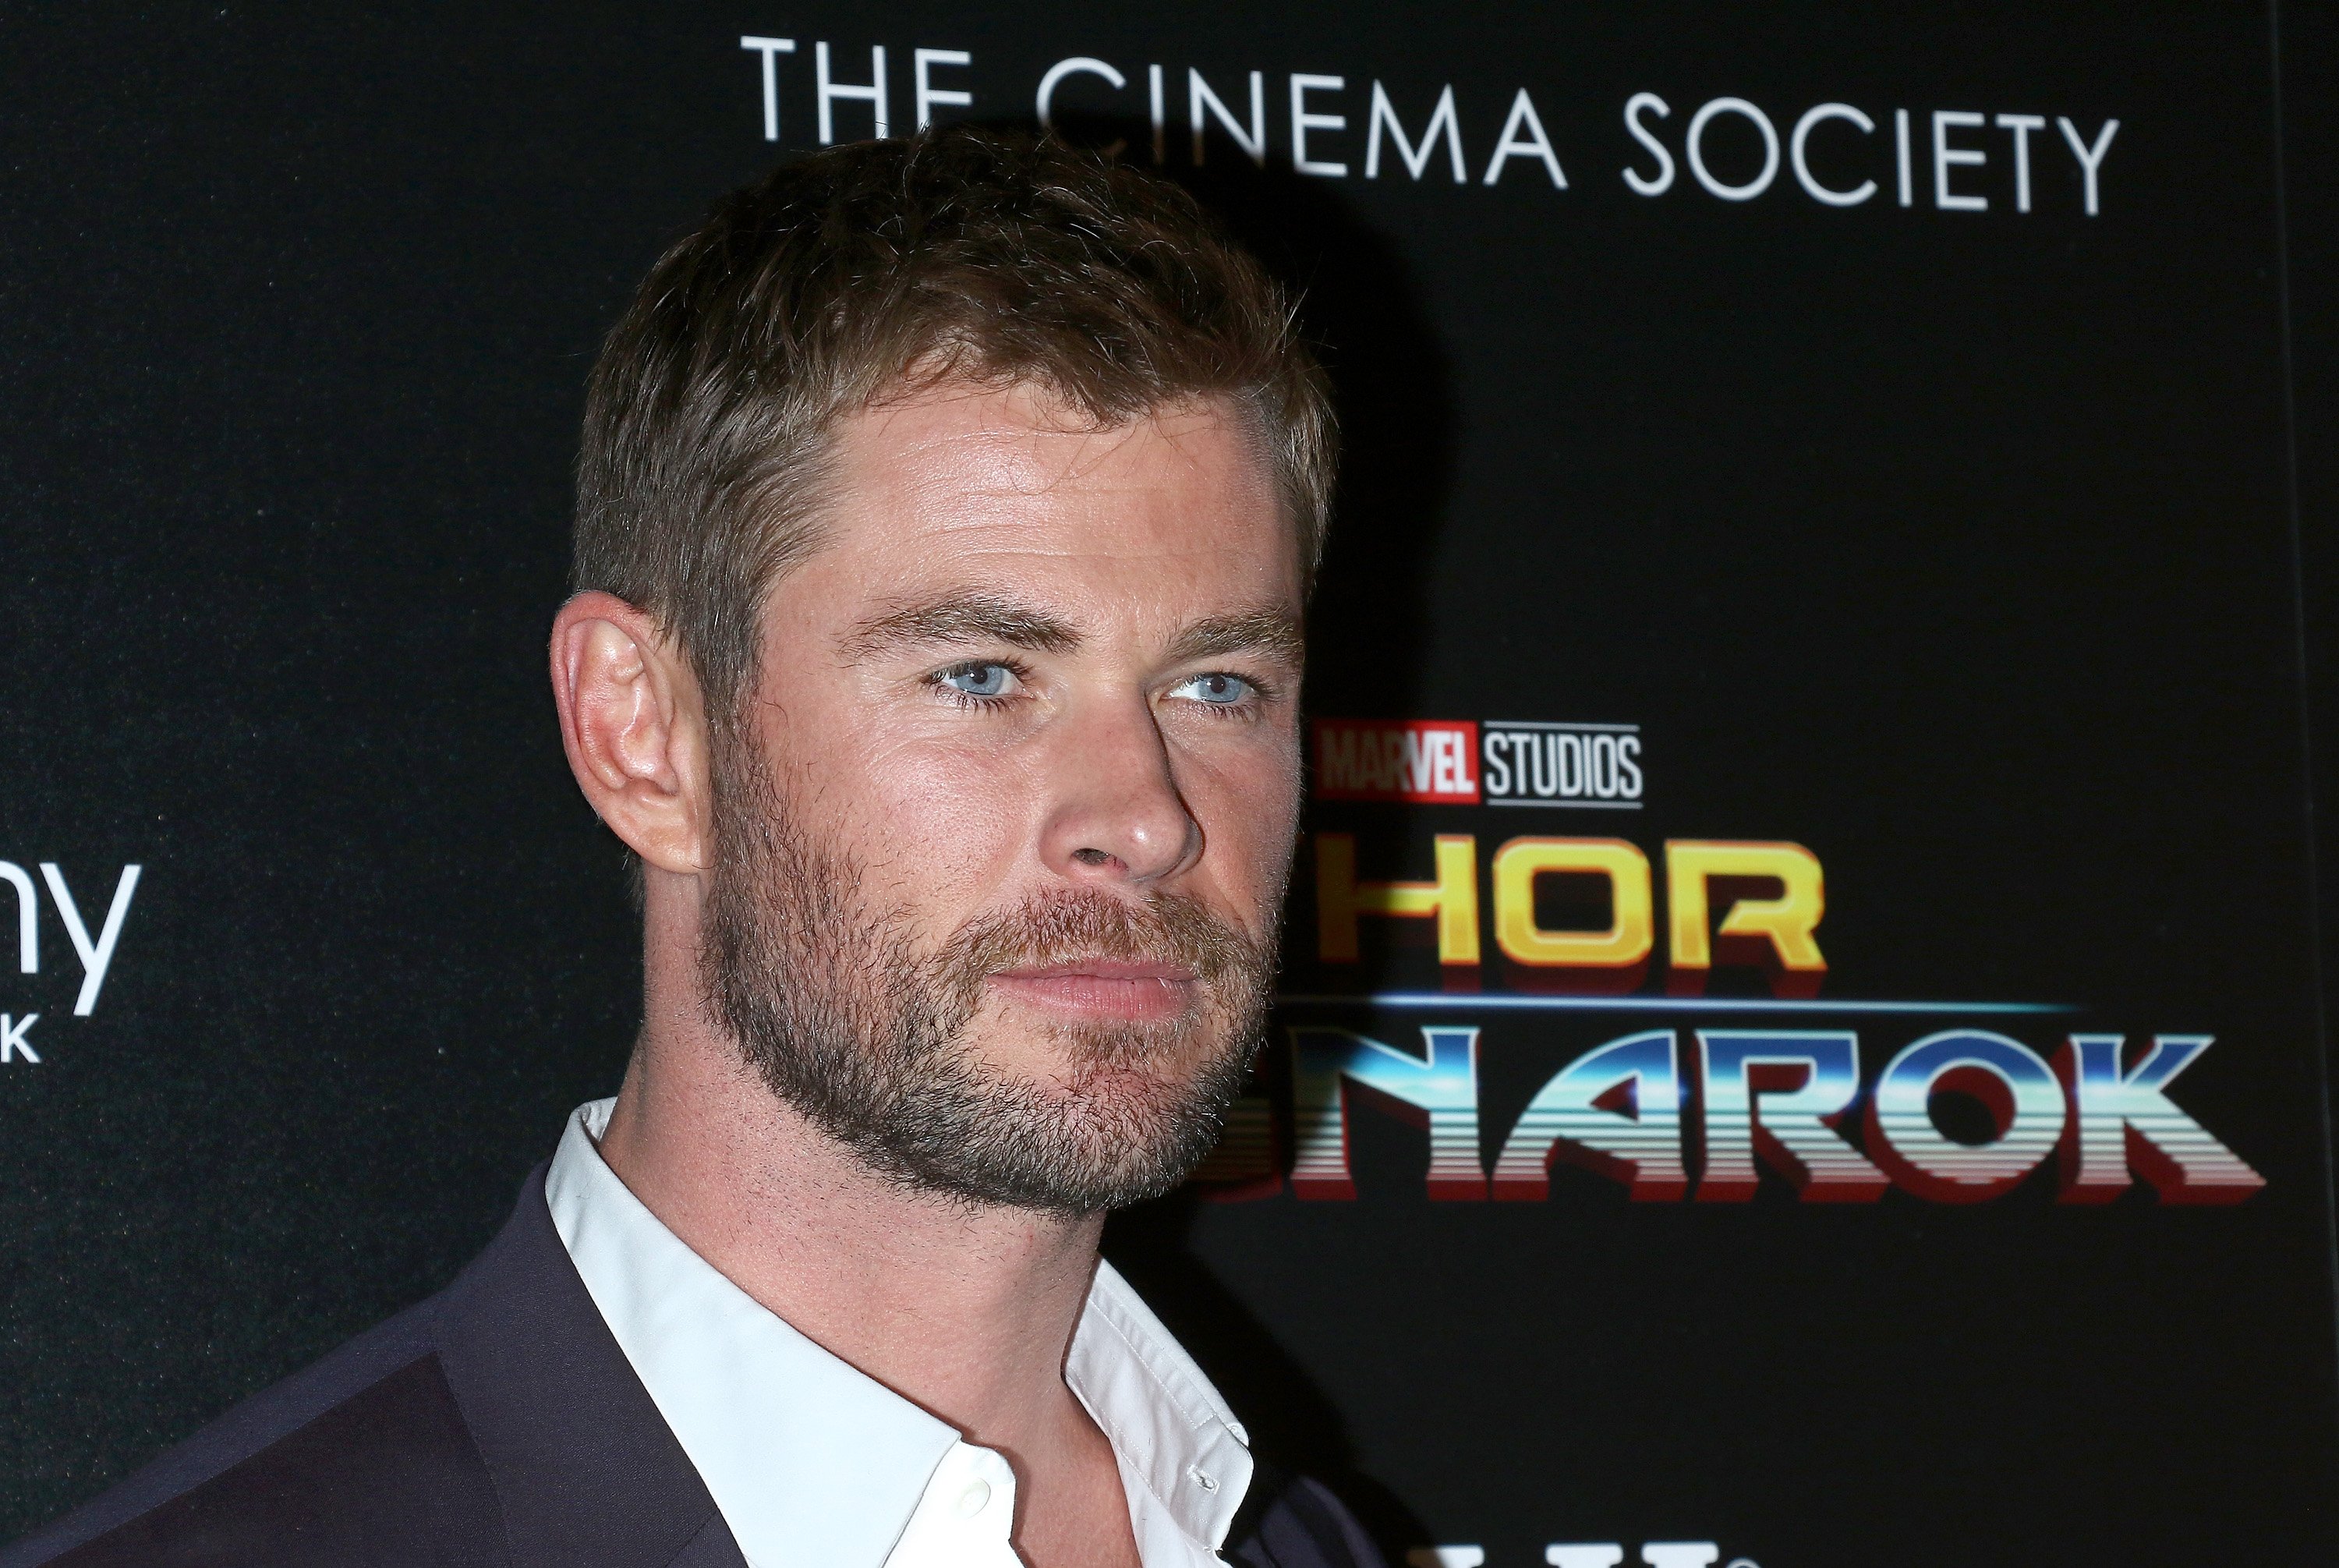 Star Trek actor Chris Hemsworth attends The Cinema Society screening of Thor: Ragnarok